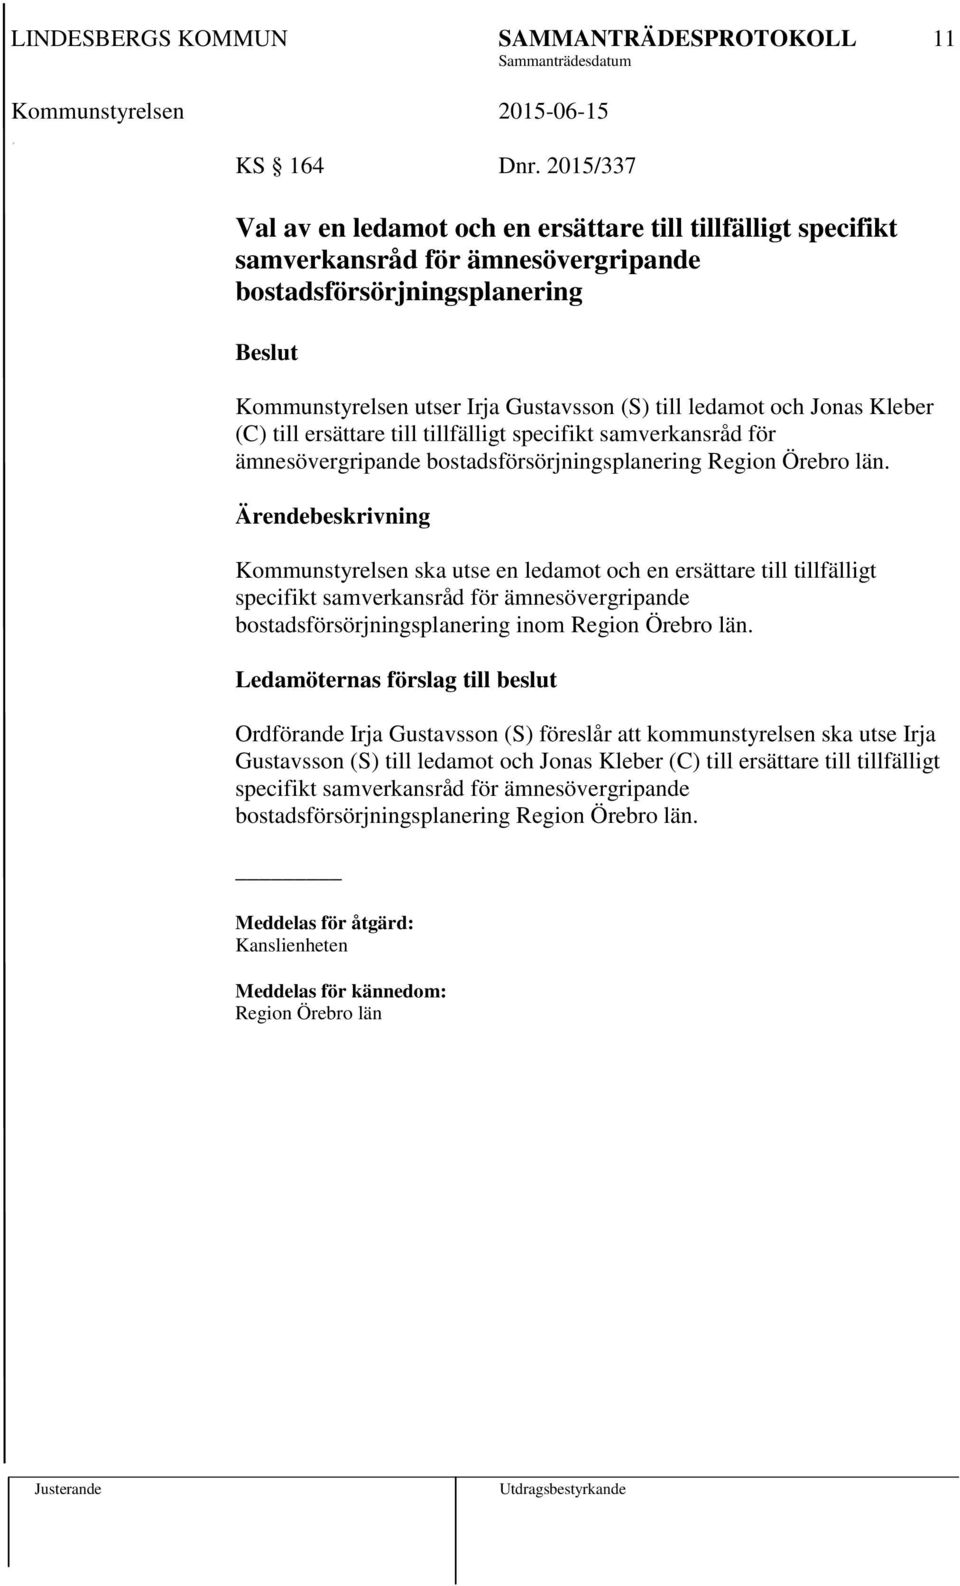 Jonas Kleber (C) till ersättare till tillfälligt specifikt samverkansråd för ämnesövergripande bostadsförsörjningsplanering Region Örebro län.